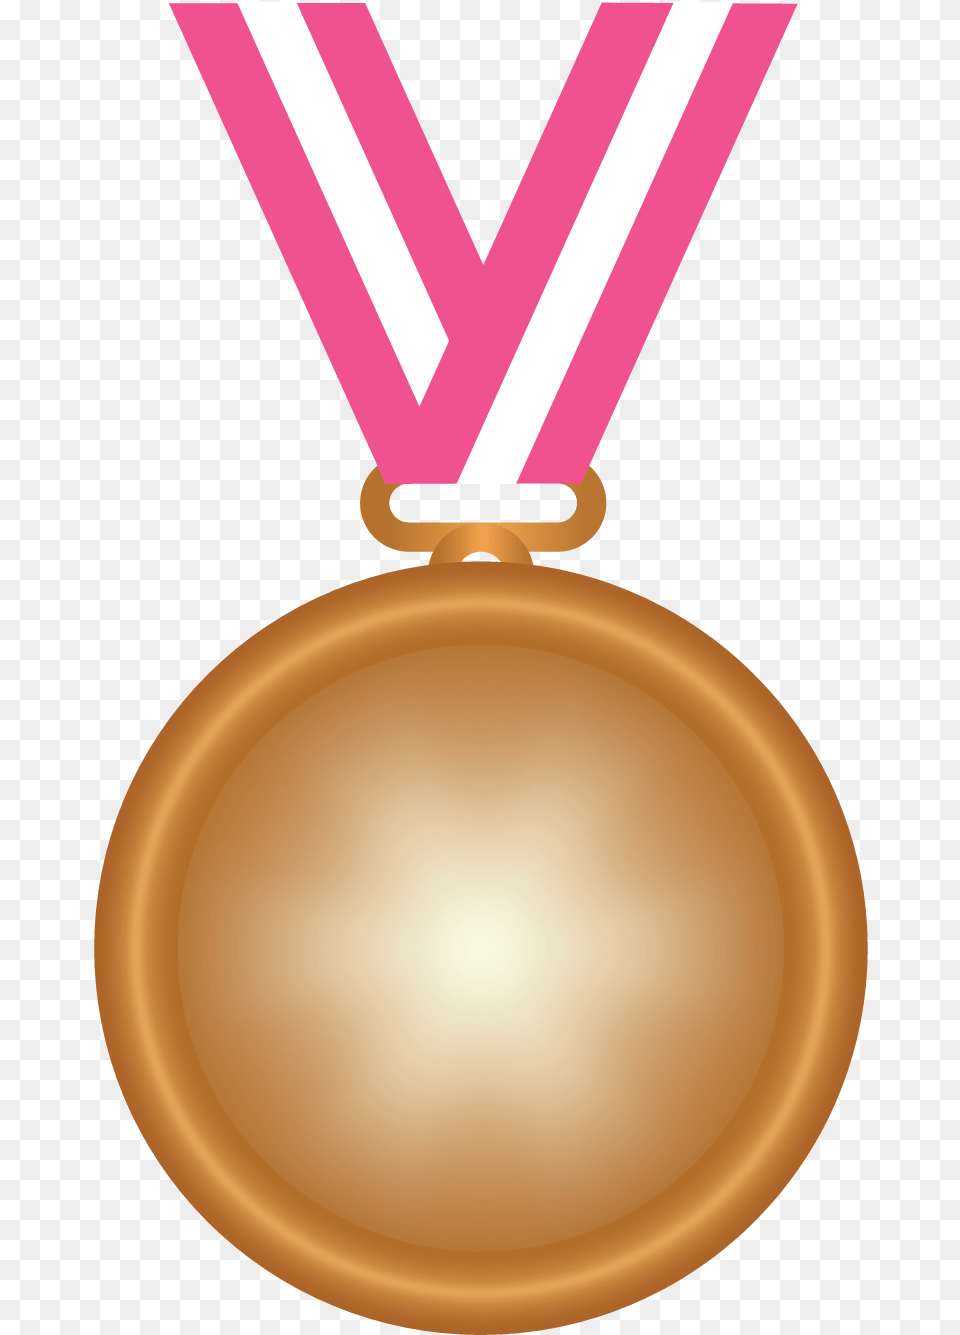 Bronze Medal Locket, Gold, Gold Medal, Trophy Png Image